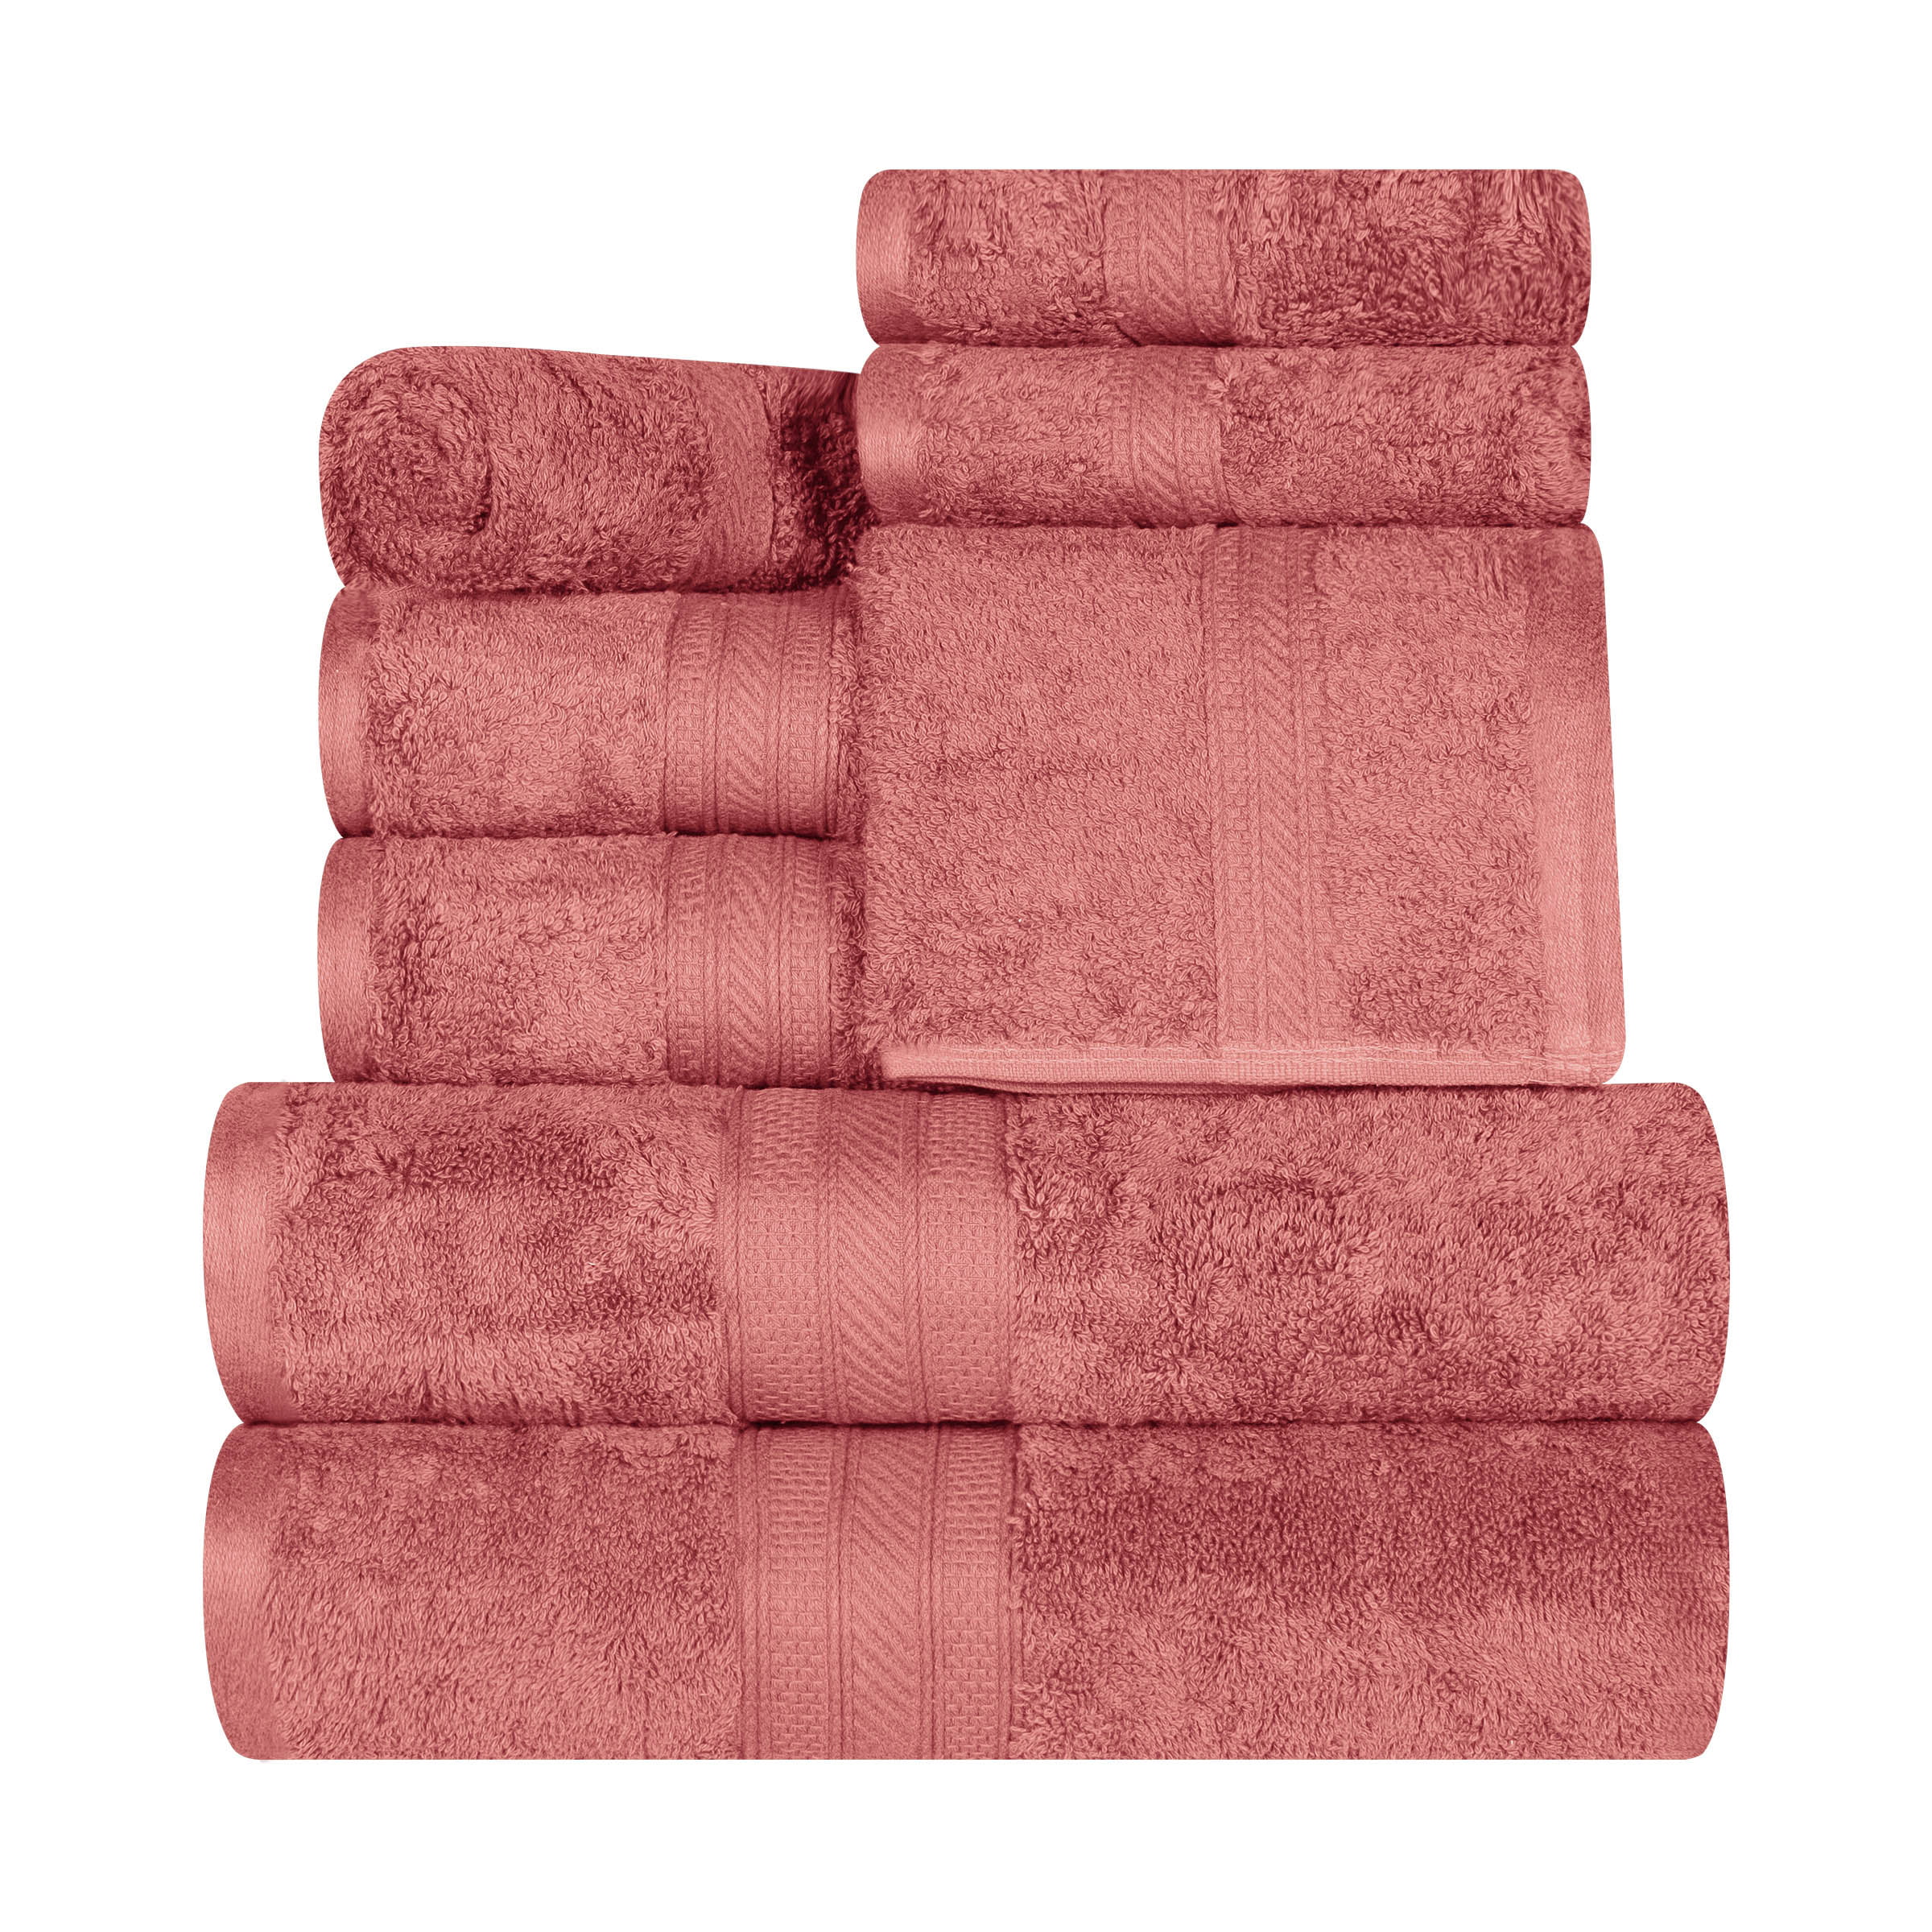 Victorija Ultra Plush 4 Piece Cotton Bath Towel Set Latitude Run Color: Grape Shake